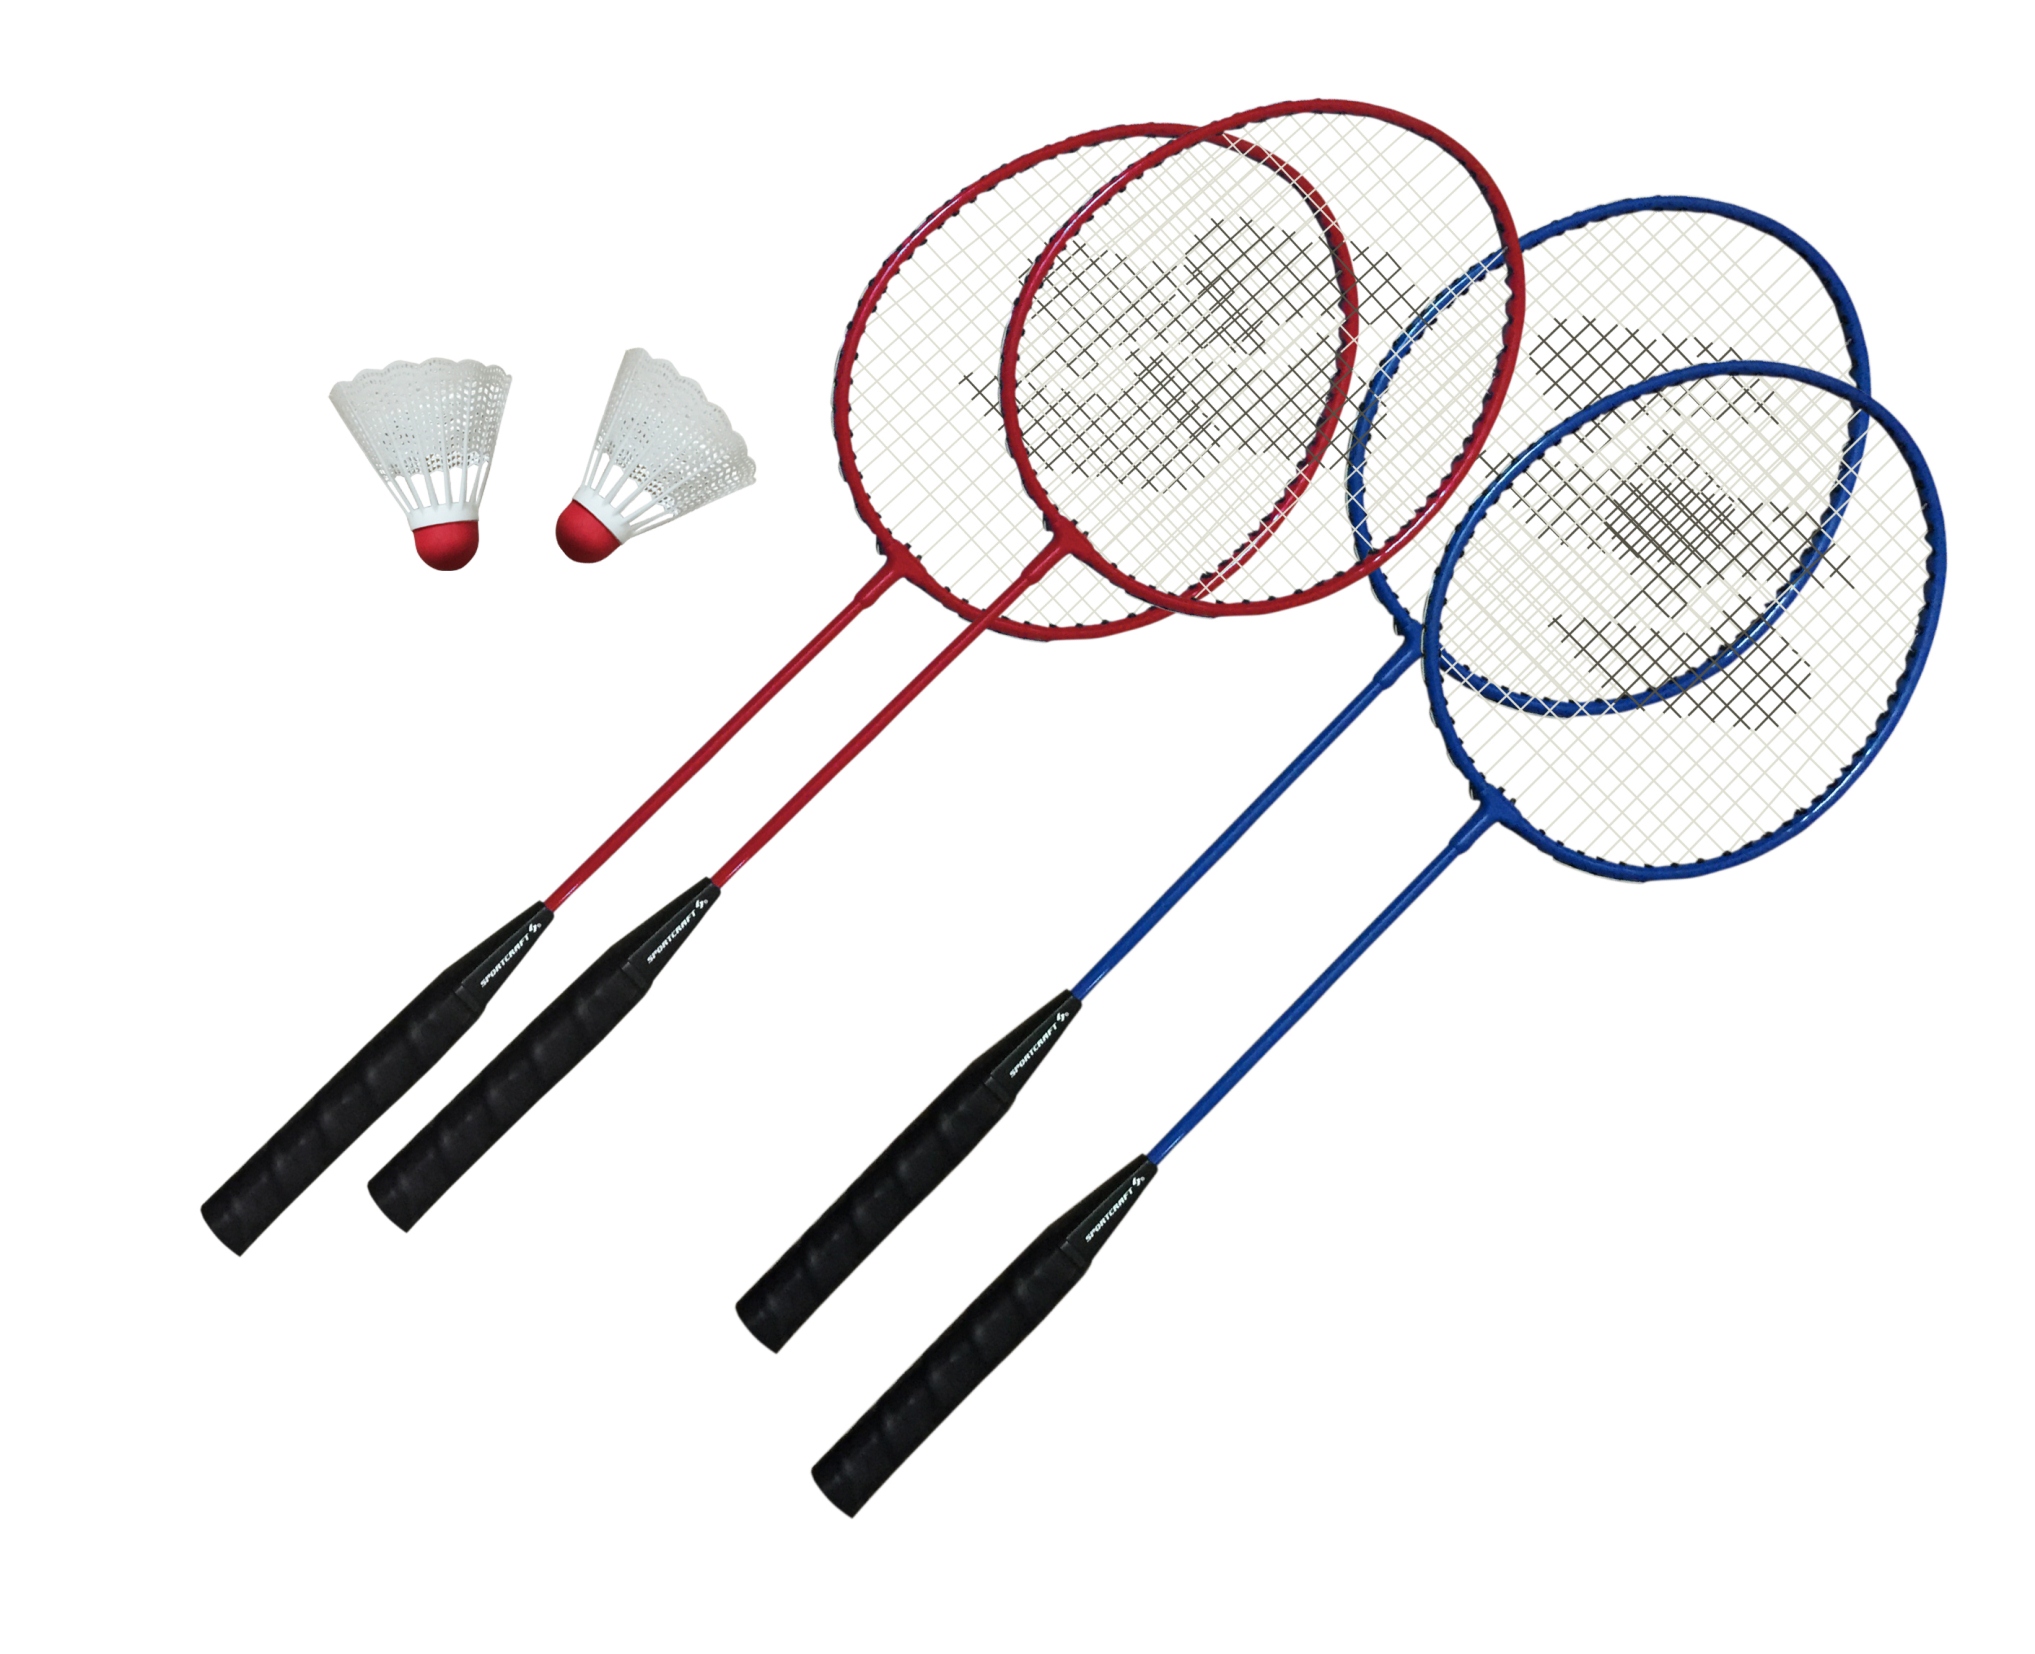 Sportcraft 4 Player Badminton Racket Set